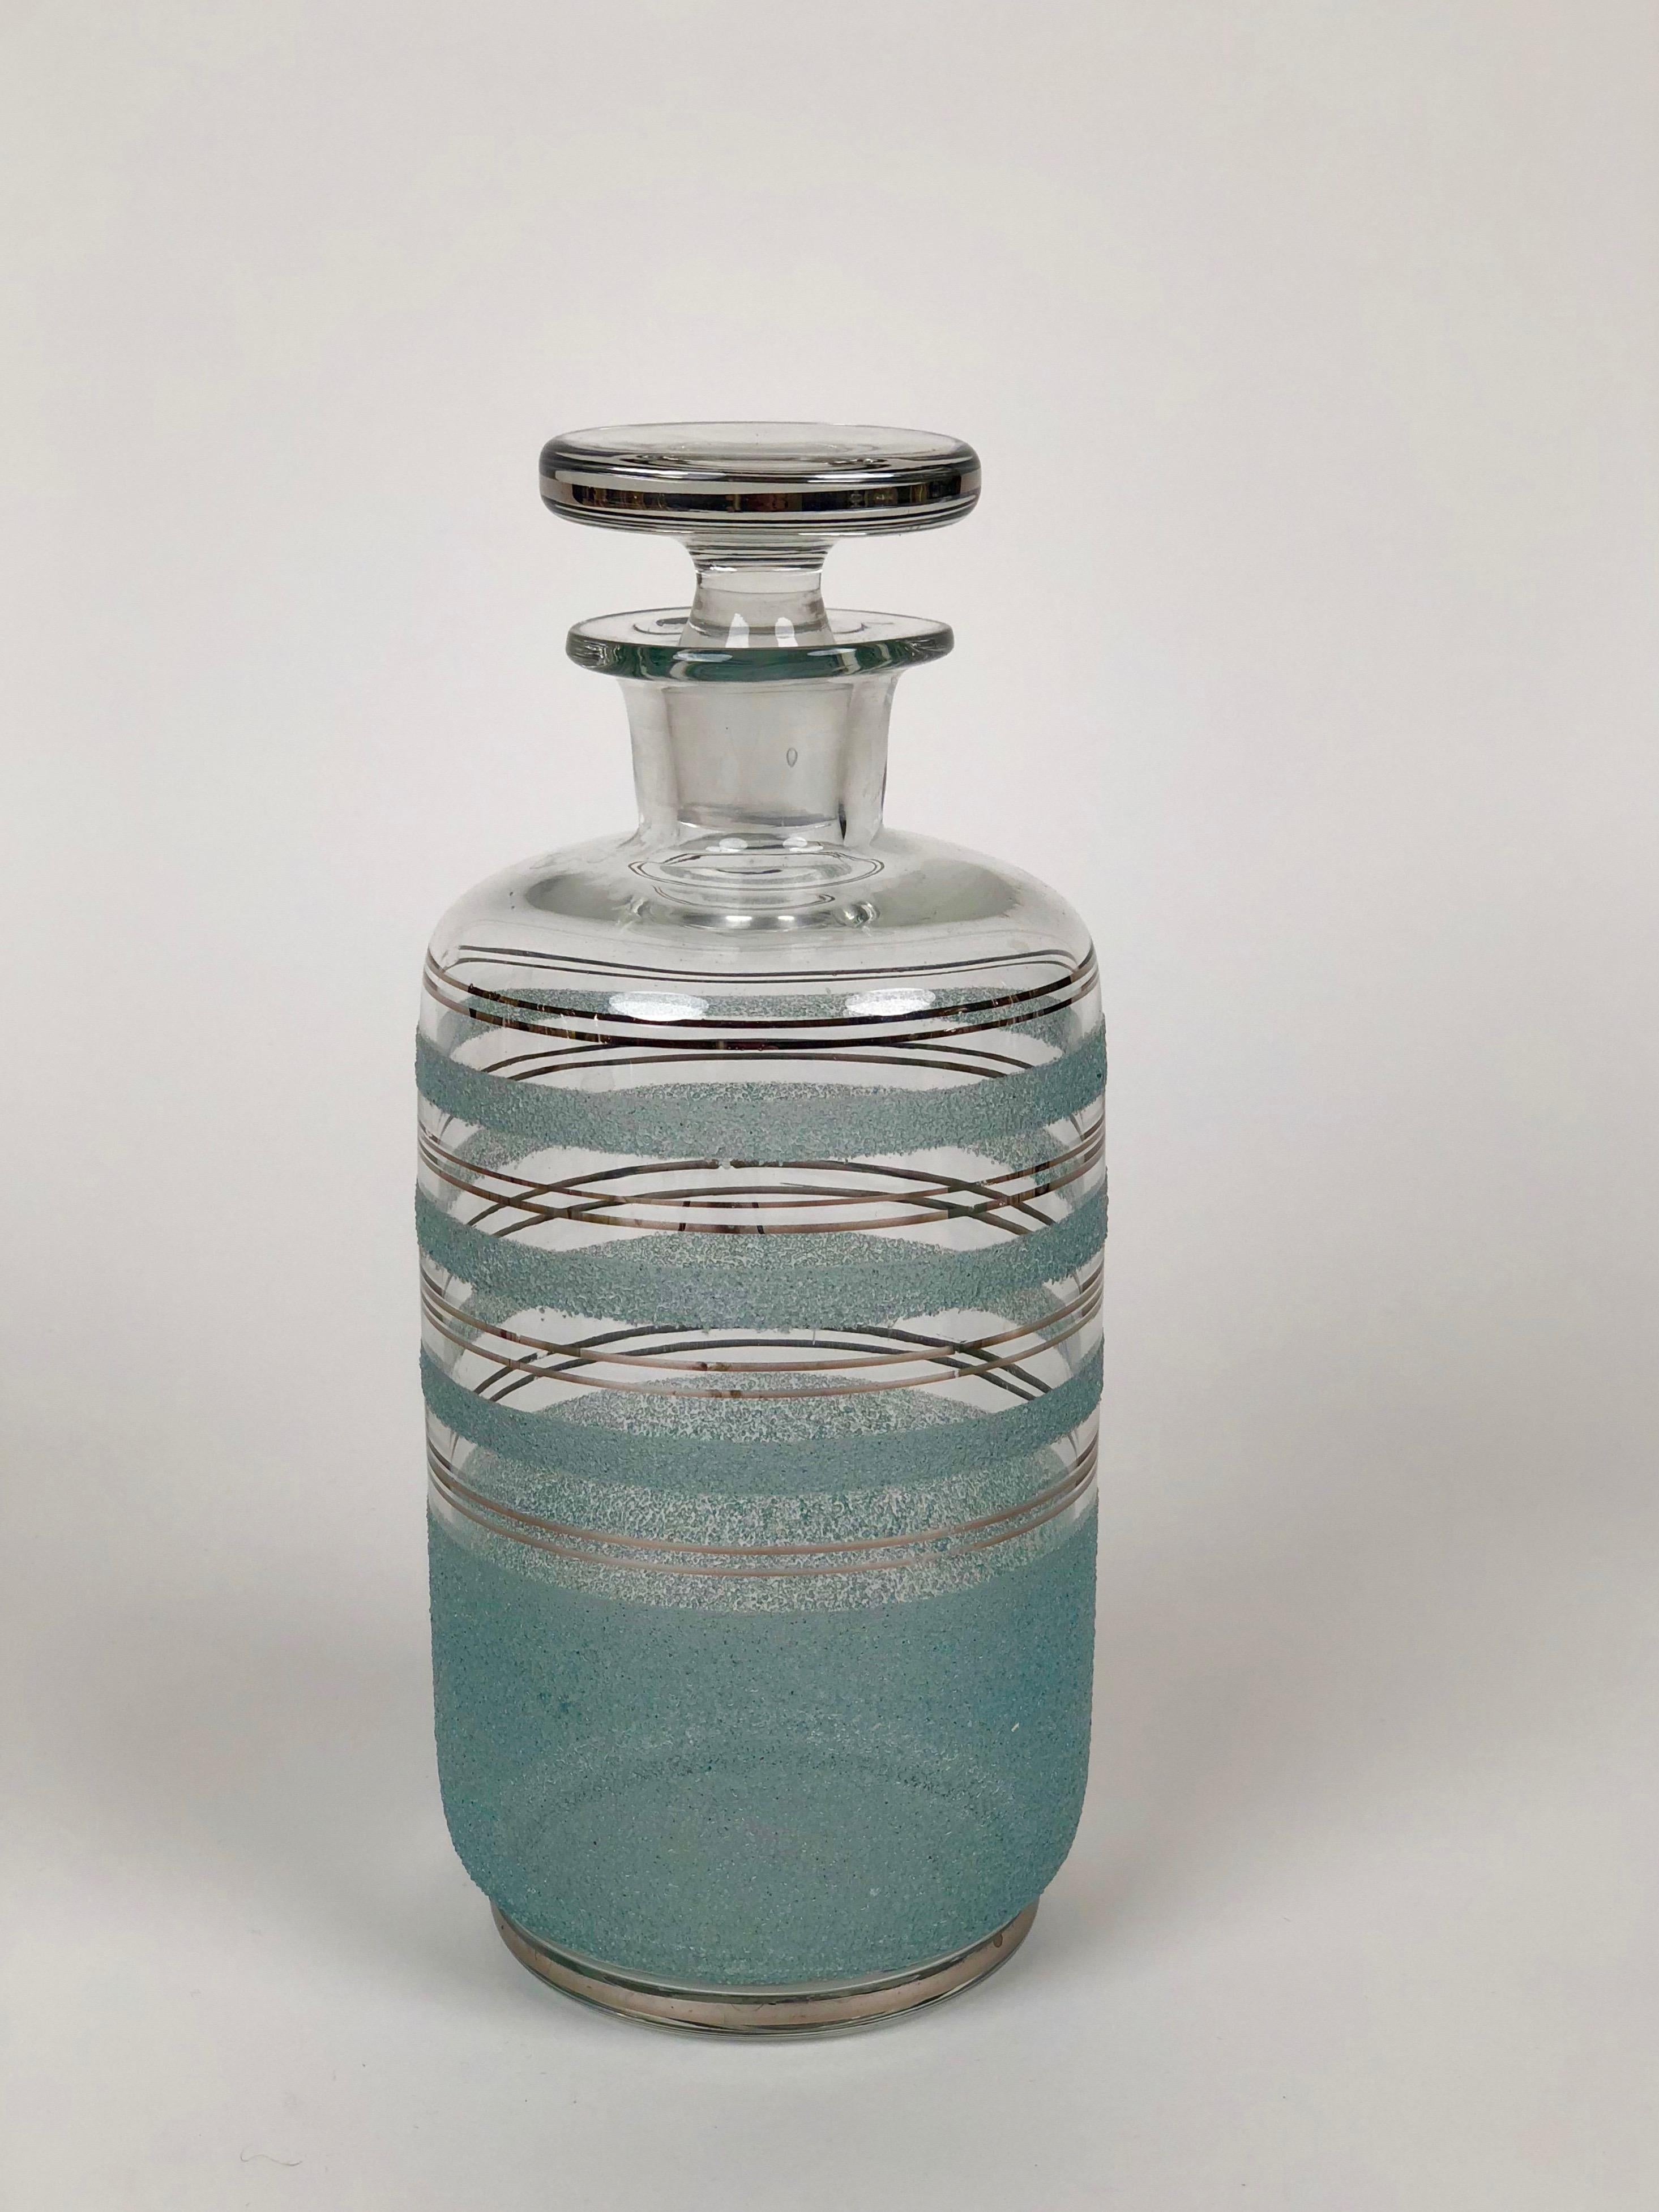 Satz von drei Glaskaraffen für Destillate aus den 1930er Jahren, hergestellt in der Tschechoslowakei.
Die Karaffen sind mit silbernen Streifen verziert, die grünen Streifen sind farbig
glas, das an der Karosserie befestigt wurde.

Sie können es für